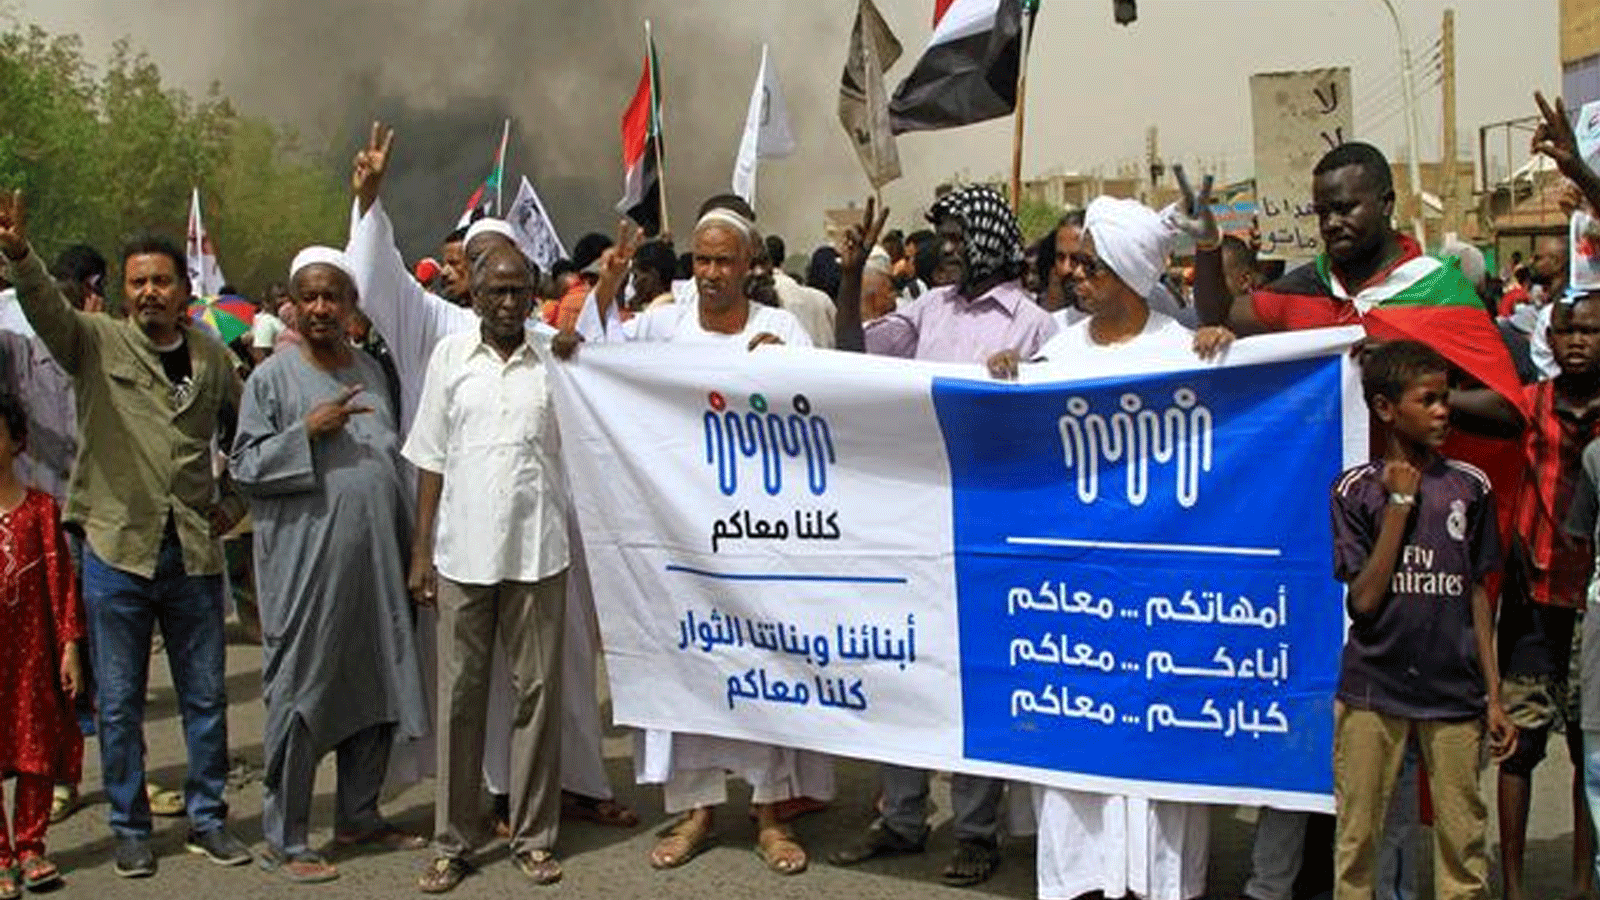 لقطة من إحدى التظاهرات المستمرة في السودان